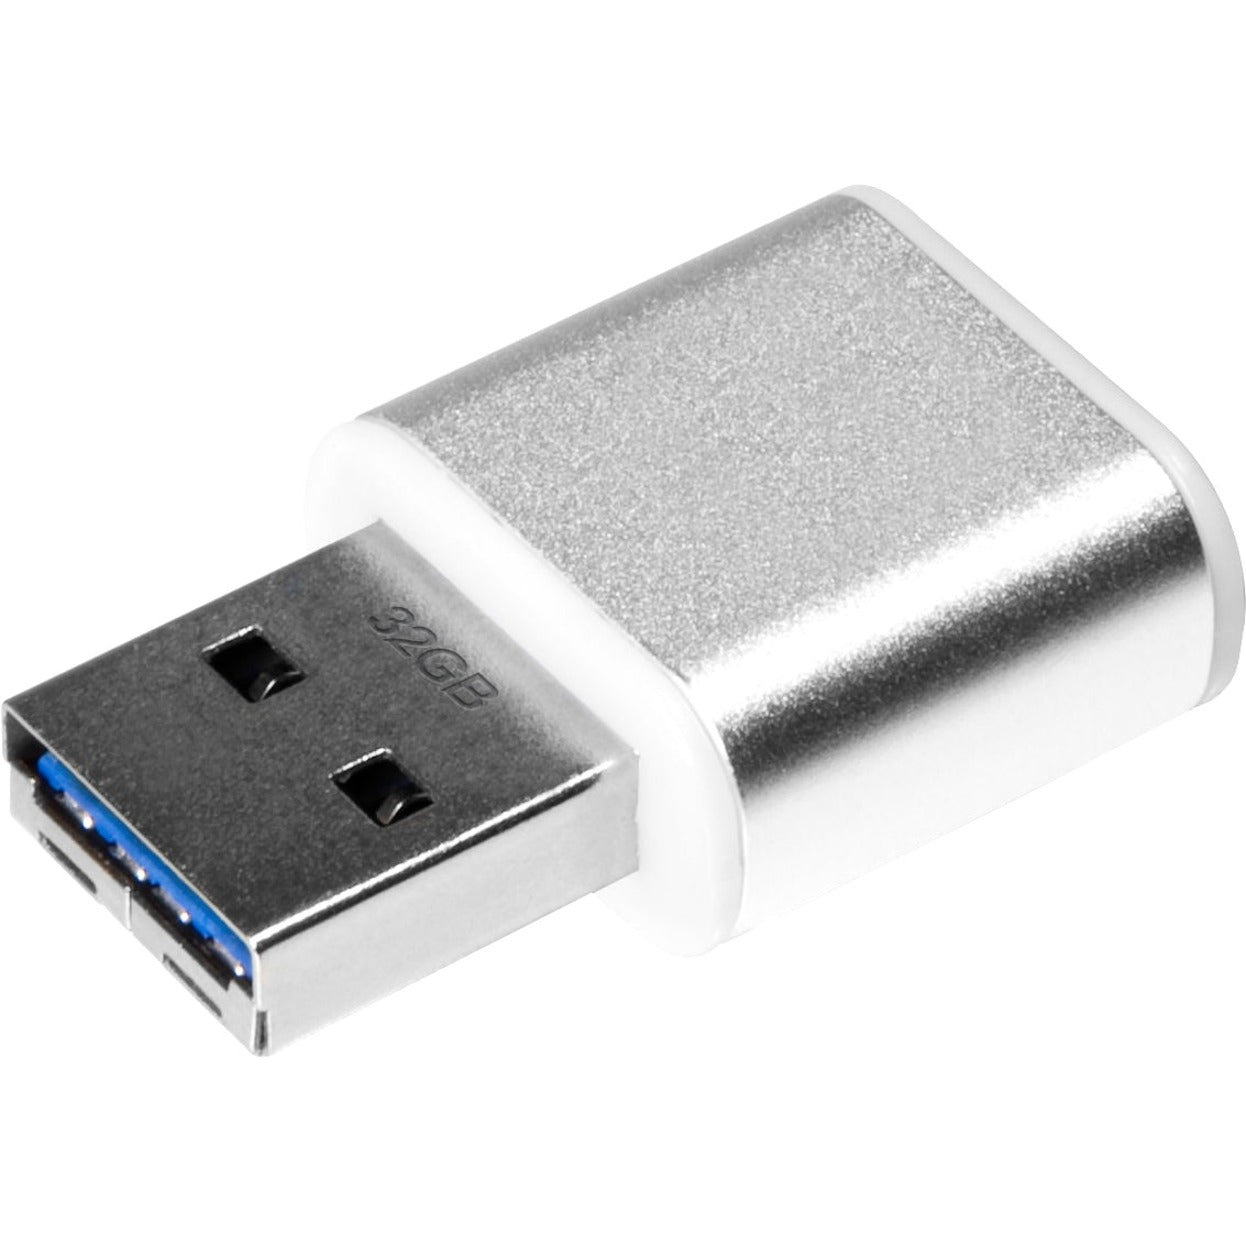 Verbatim 49840 Store 'n' Go Mini Metal USB Drive, 32GB, USB 3.0 Flash Drive